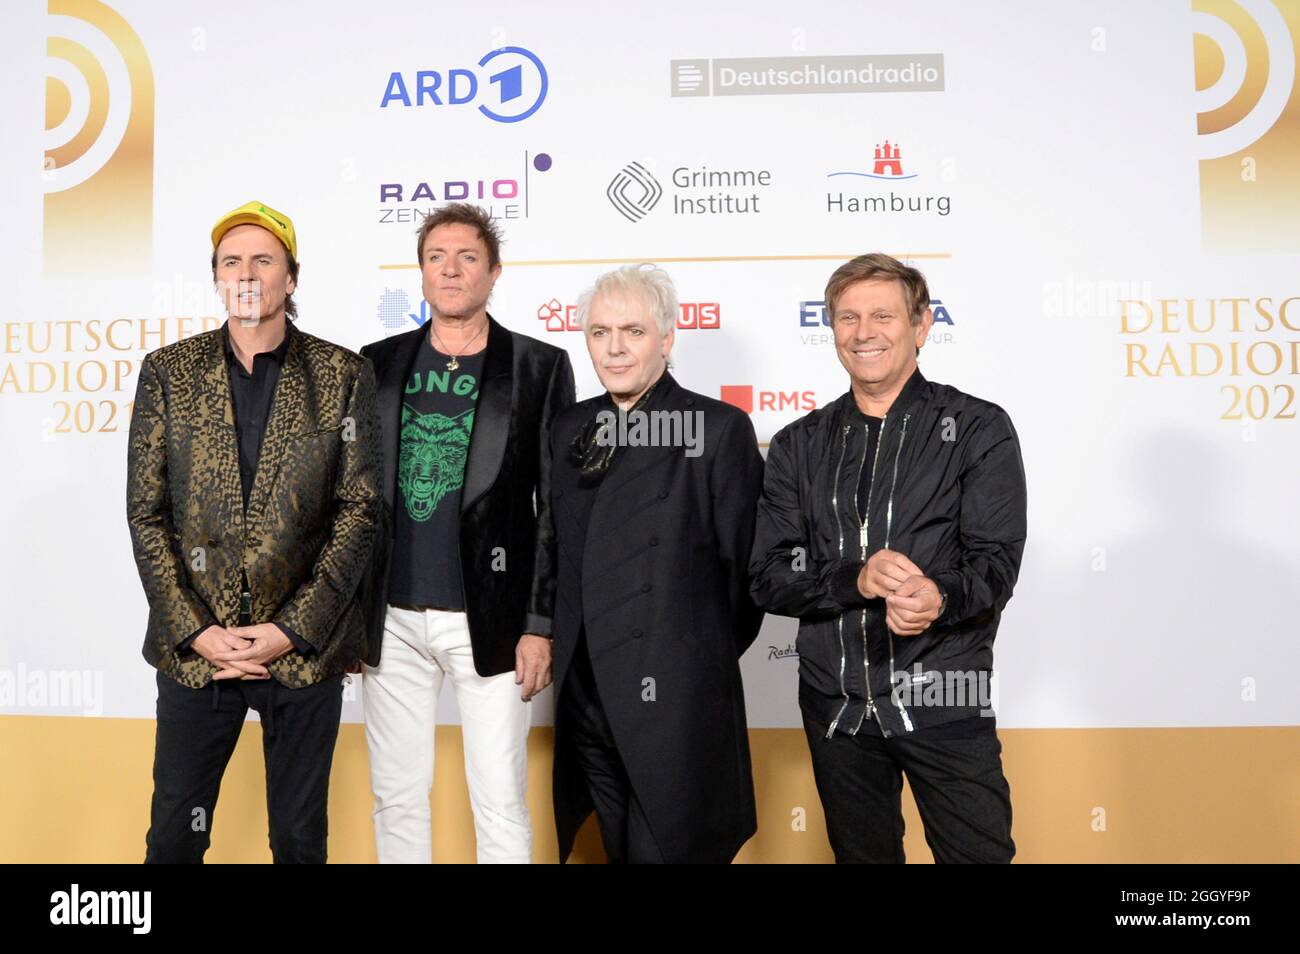 Hamburg der 02.09.2021 - John Taylor, Simon Le Bon, Nick Rhodes und Roger Taylor (v. li.) der britischen Band Duran Duran bei der Verleihung Deutscher Stockfoto